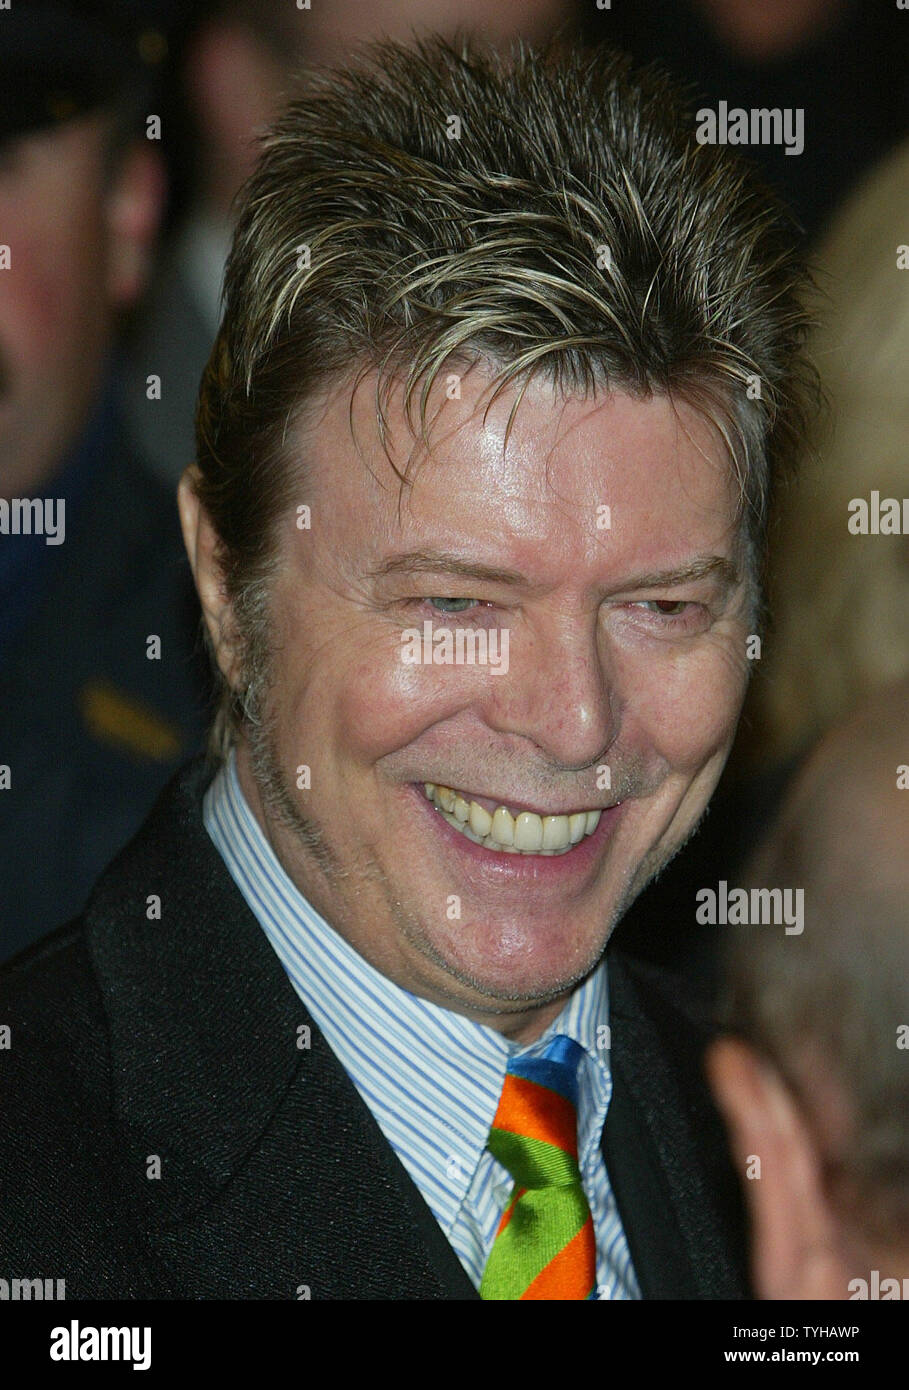 Le chanteur David Bowie arrive à la soirée d'ouverture de la jouer 'La couleur pourpre' qui a contribué à la production d'Oprah Winfrey au théâtre de Broadway, le 1 décembre 2005 à New York. (Photo d'UPI/Monika Graff) Banque D'Images